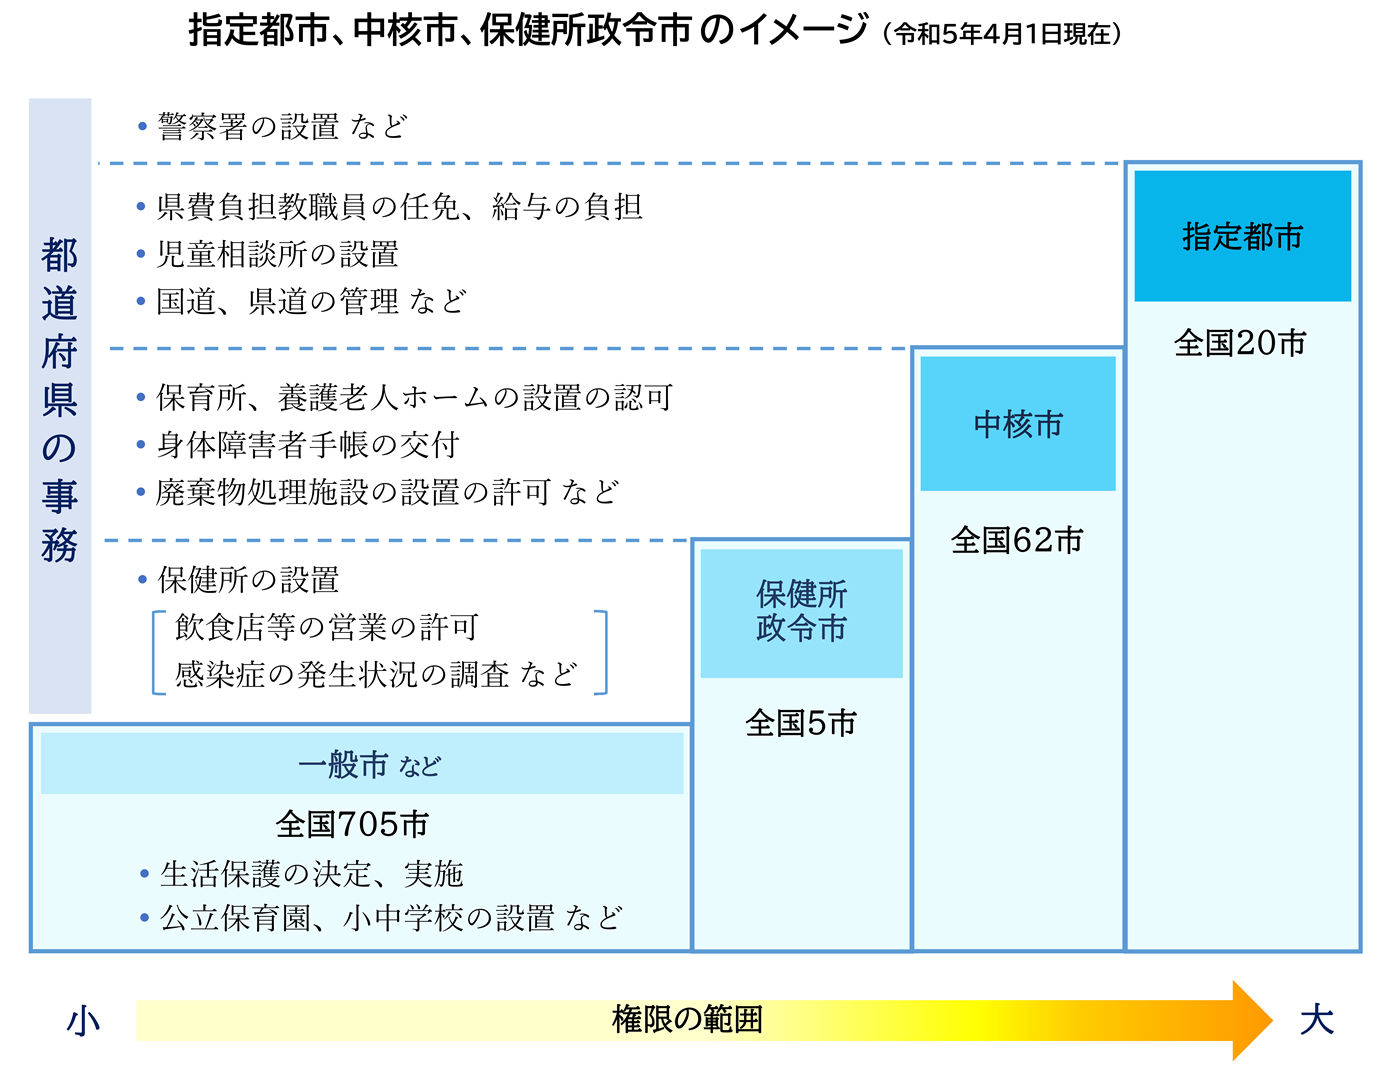 指定都市、中核市、保健所政令市の処理する事務のイメージ図です。